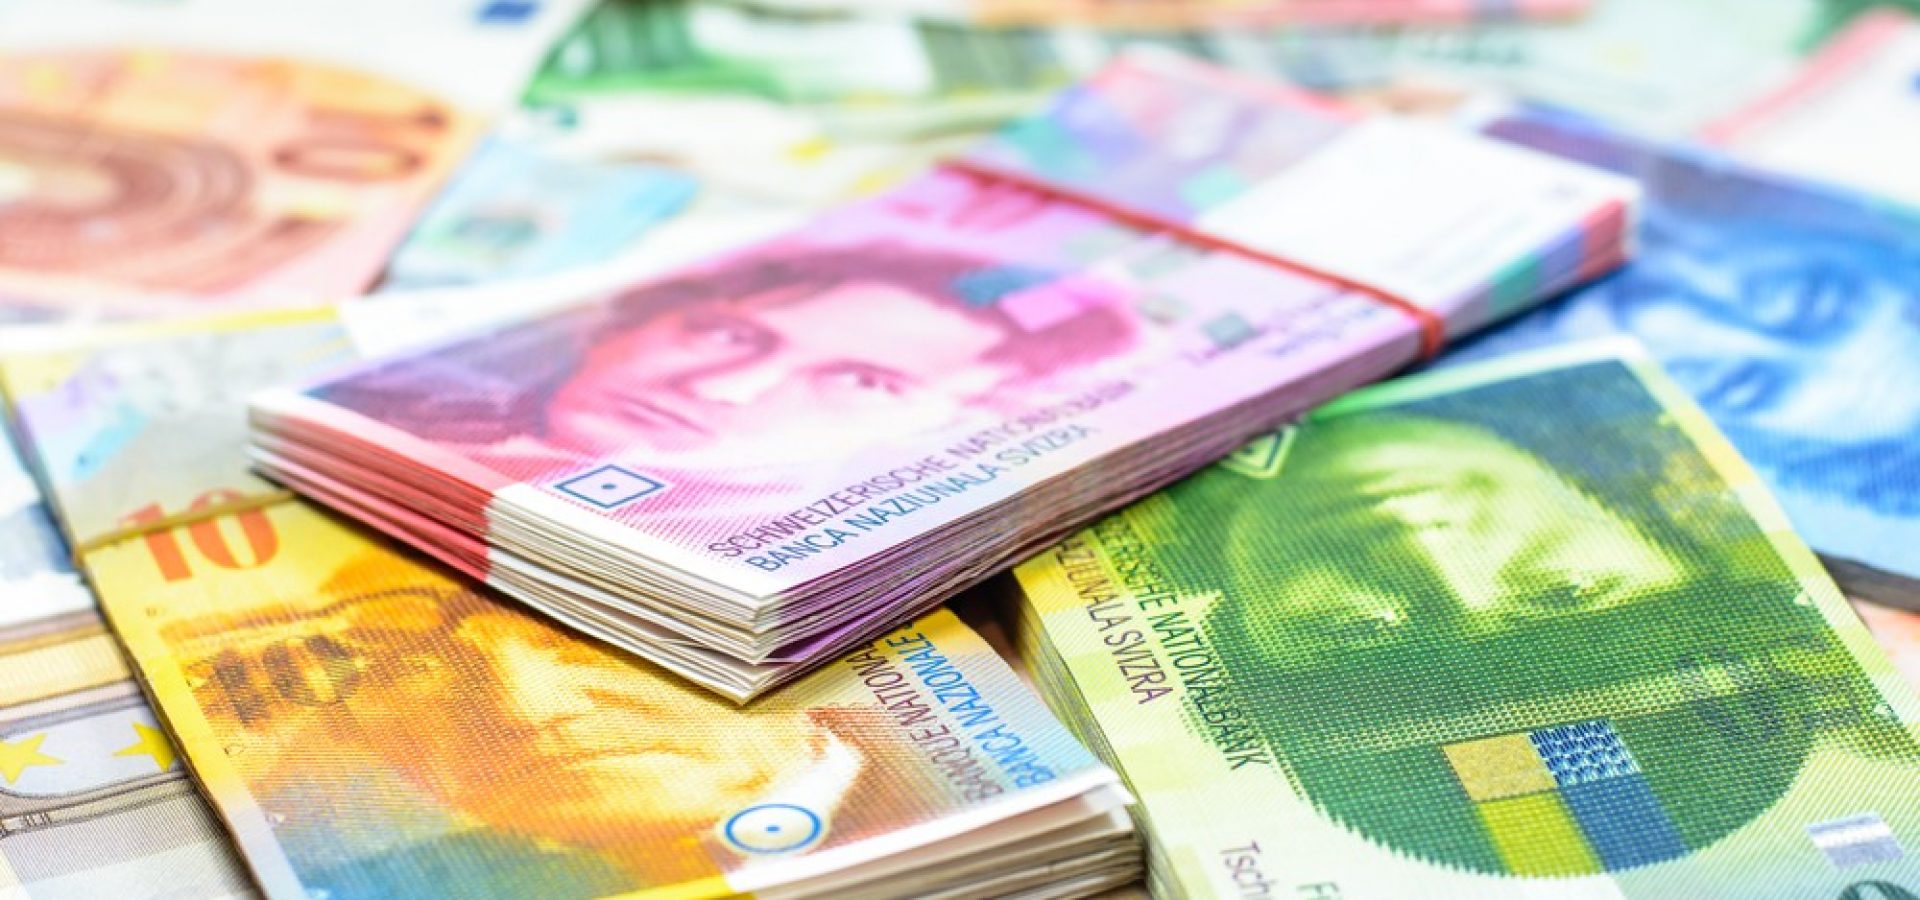 Wibest – Washington: Swiss franc bills.